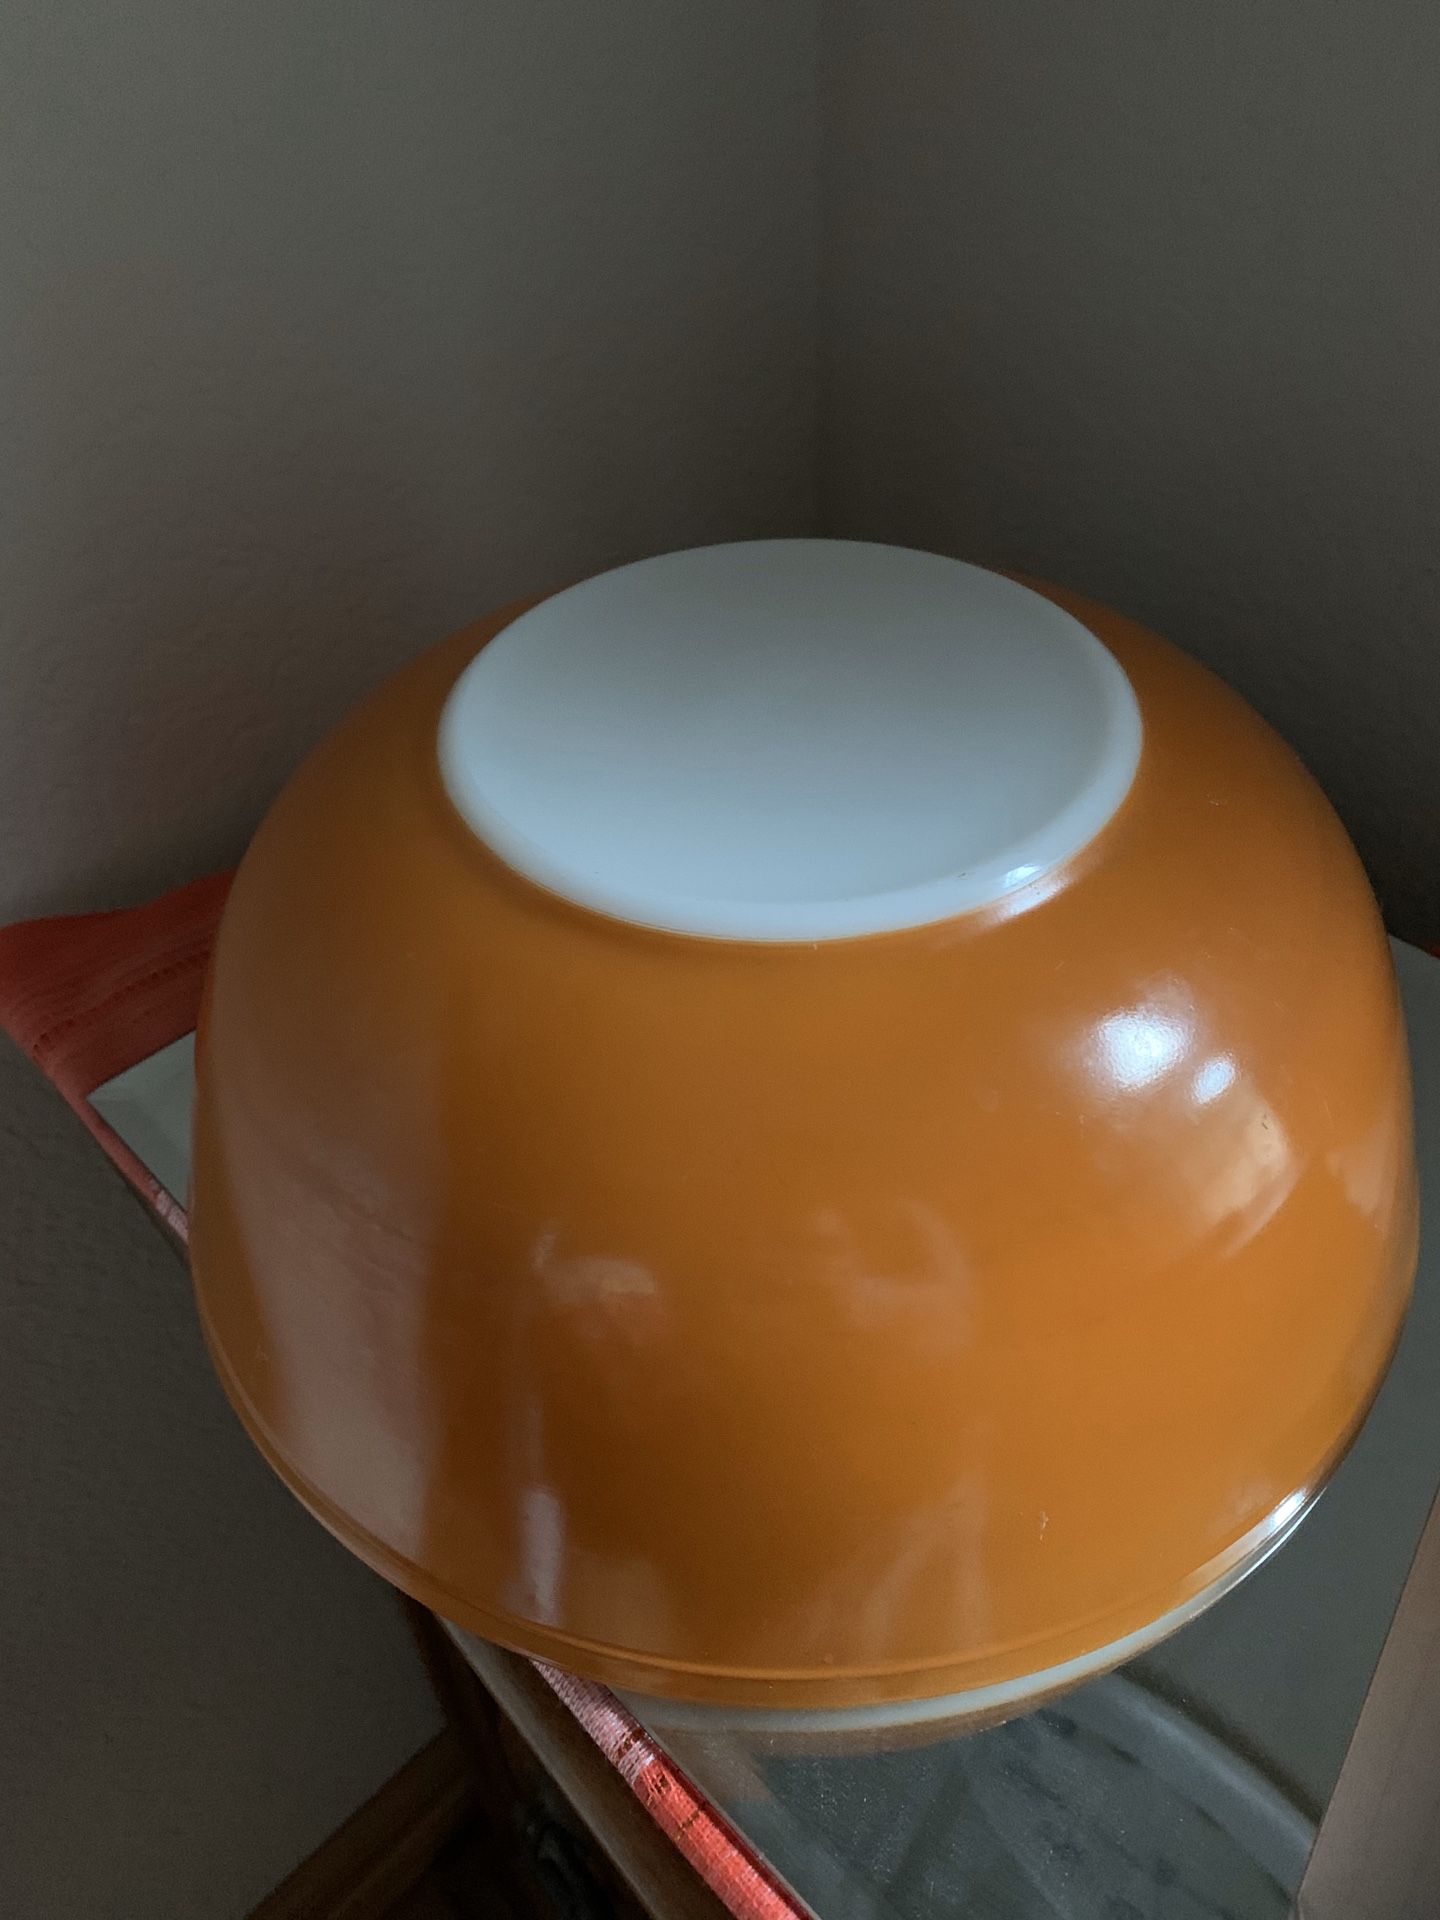 Vintage orange Pyrex mixing bowl